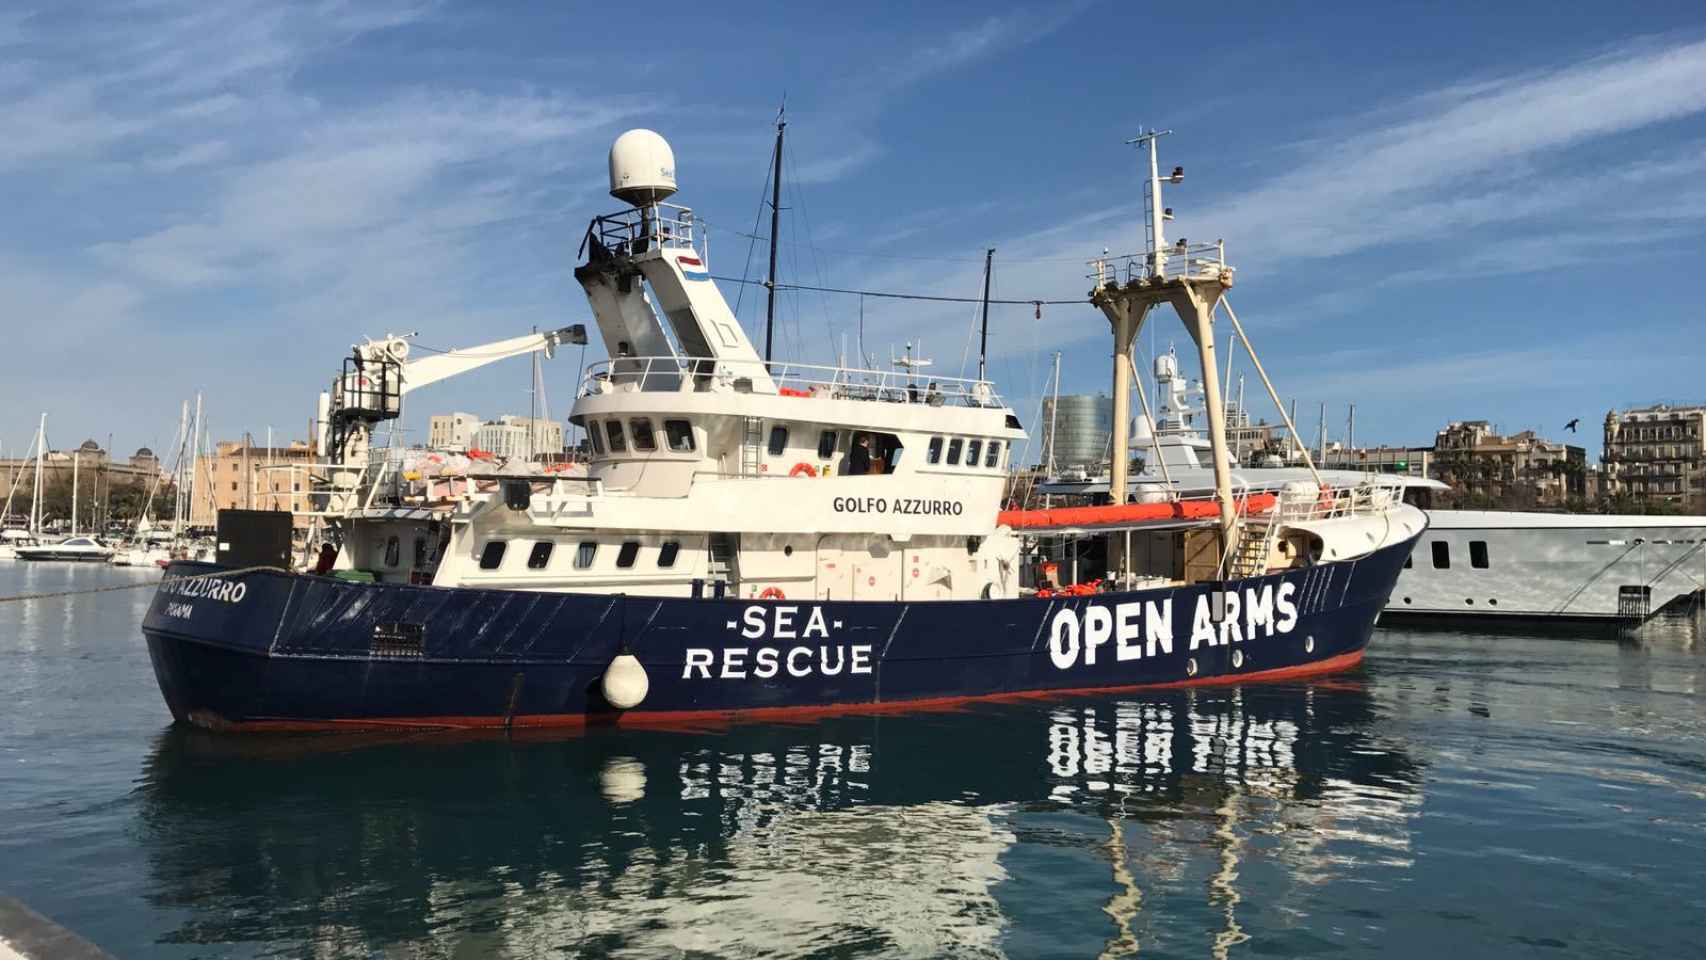 La ONG ha alquilado el Golfo Azzurro mientras su velero se repara.